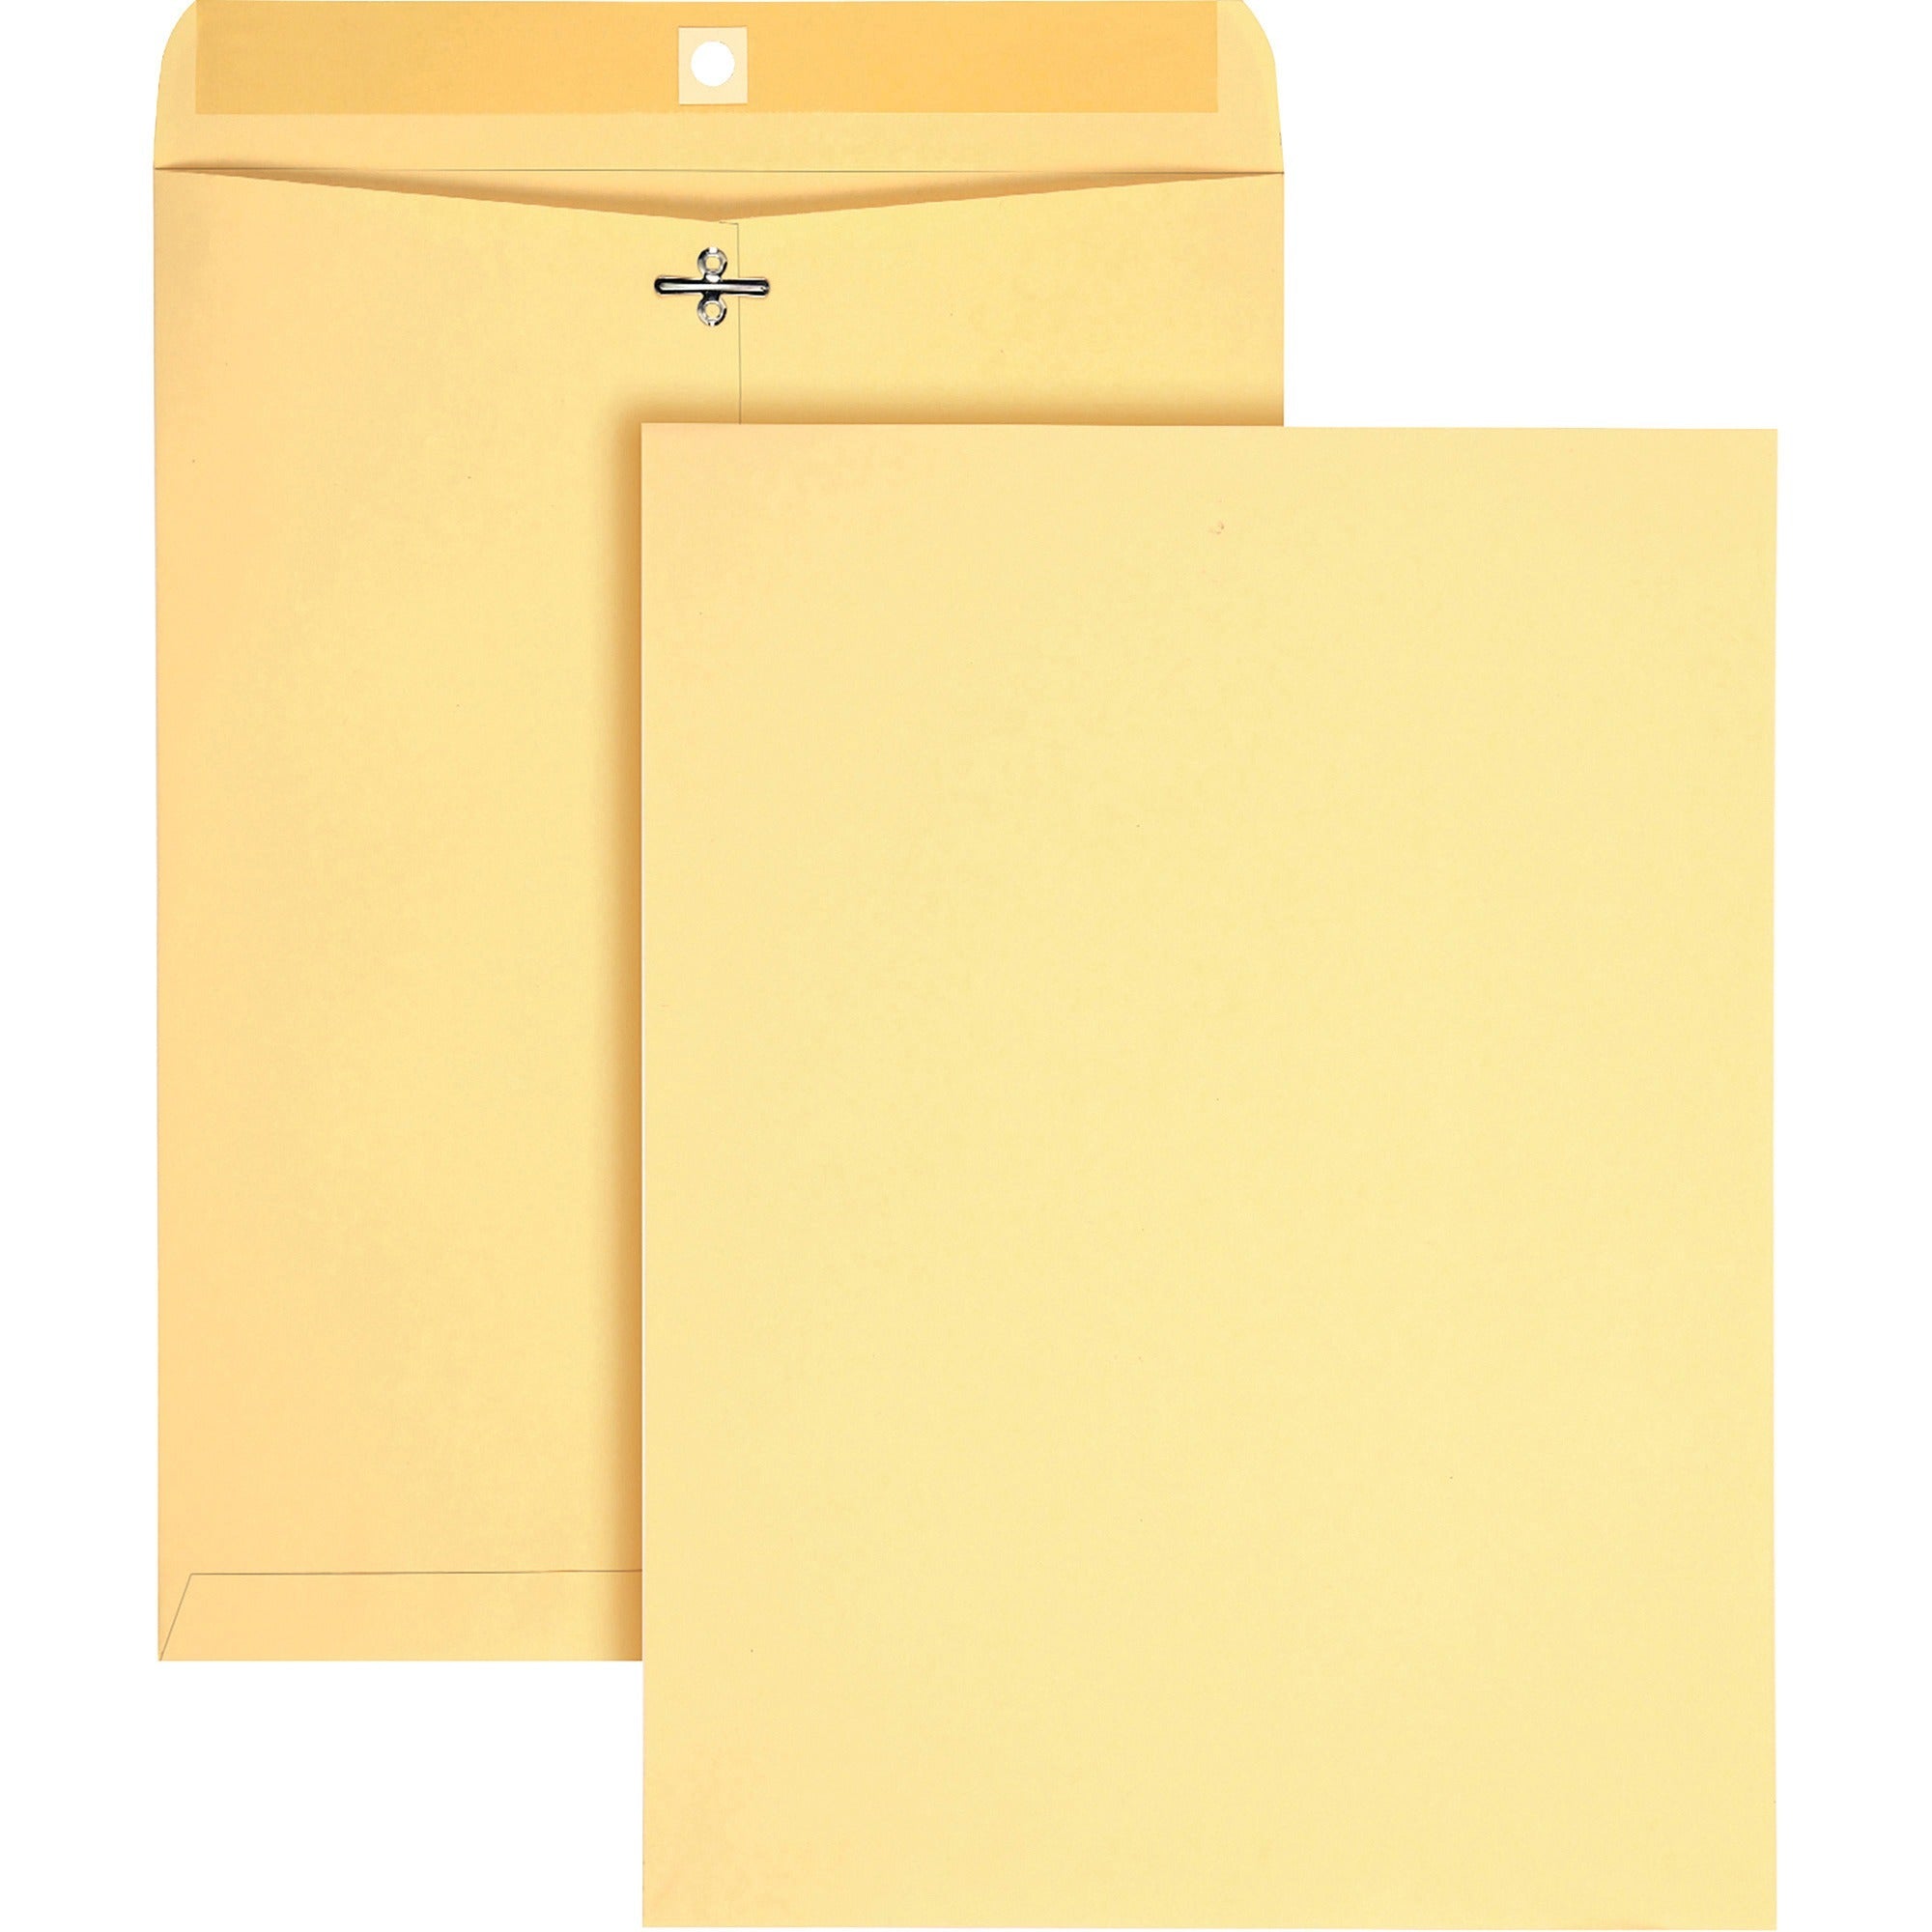 quality-park-10-x-13-heavy-duty-clasp-envelopes-clasp-#97-10-width-x-13-length-clasp-gummed-flap-100-box_qua38497 - 1